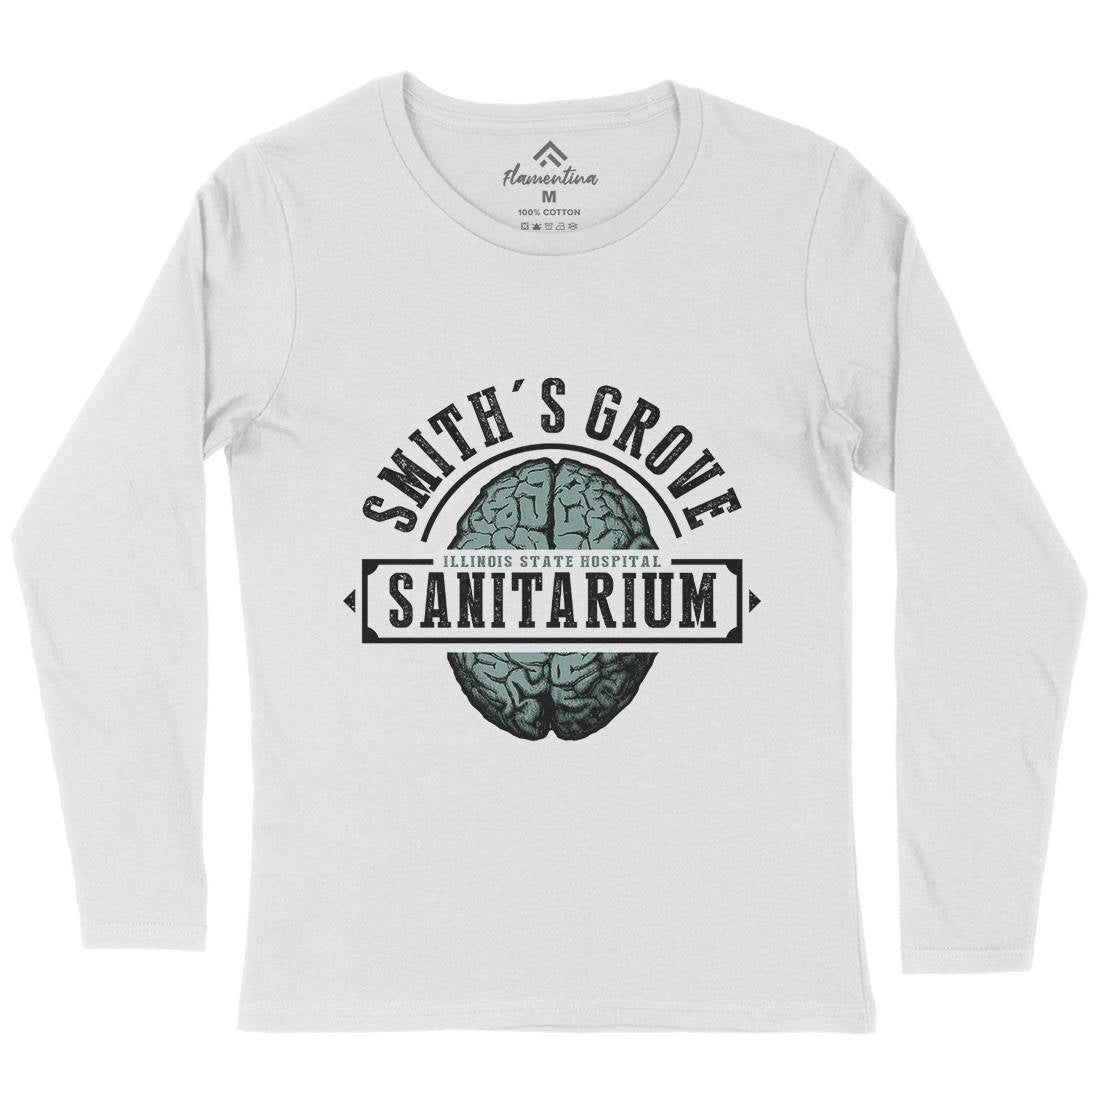 Smiths Grove Womens Long Sleeve T-Shirt Horror D331